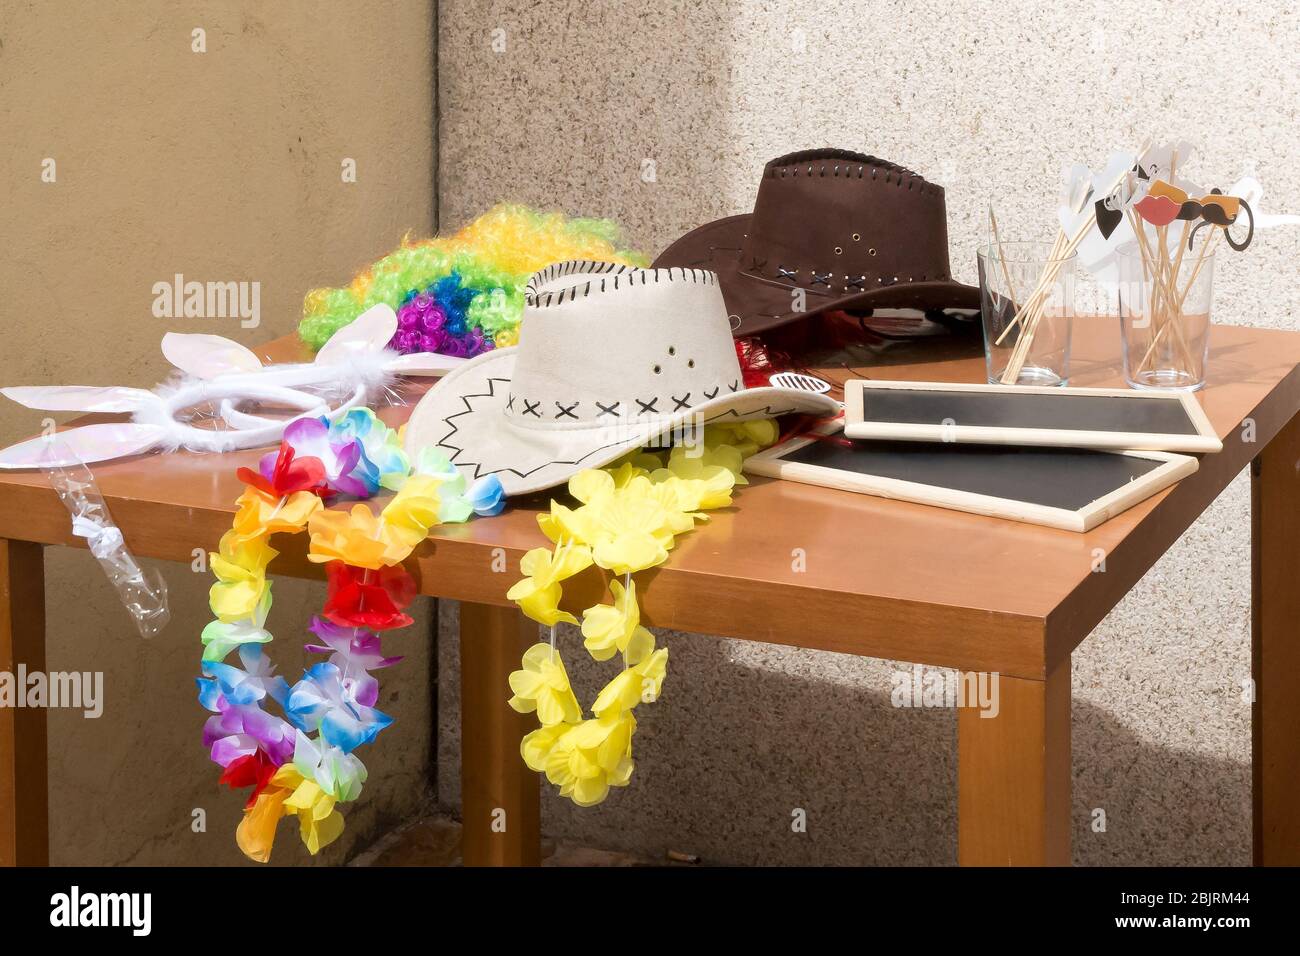 Chapeau de cowboy blanc à côté d'autres accessoires de fête pour un appel photo sur une table. Banque D'Images